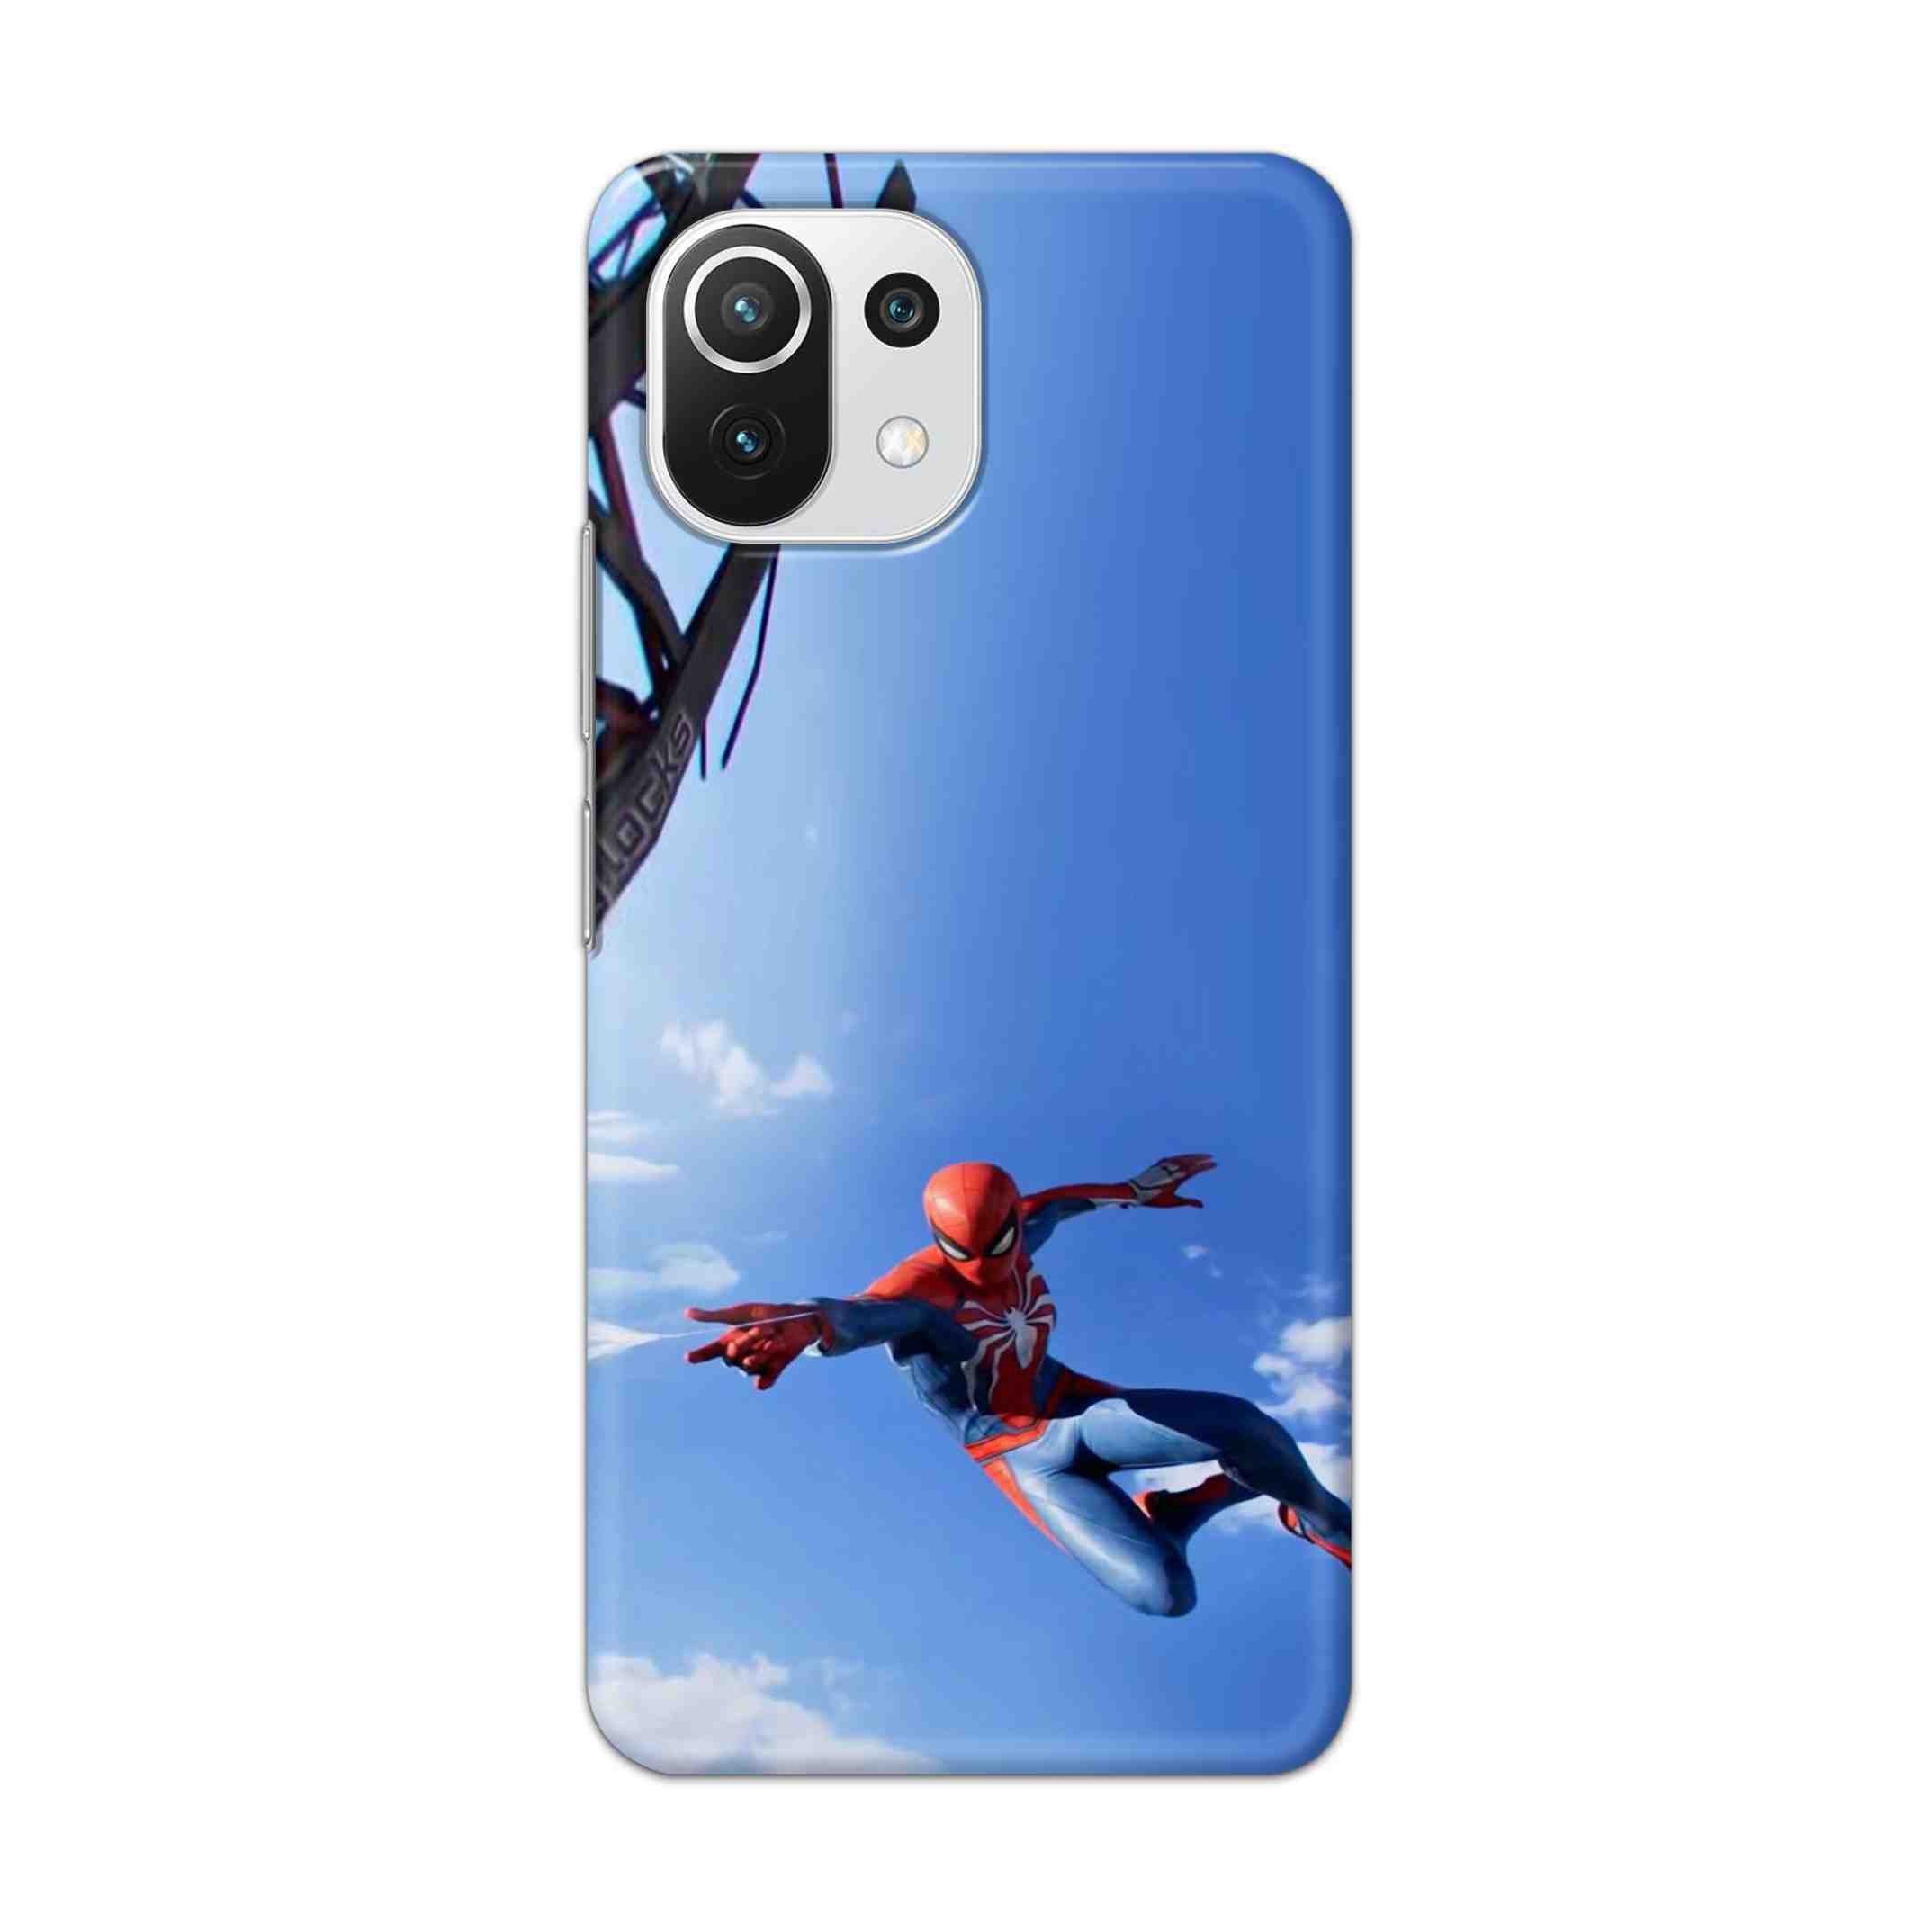 Buy Marvel Studio Spiderman Hard Back Mobile Phone Case Cover For Mi 11 Lite NE 5G Online